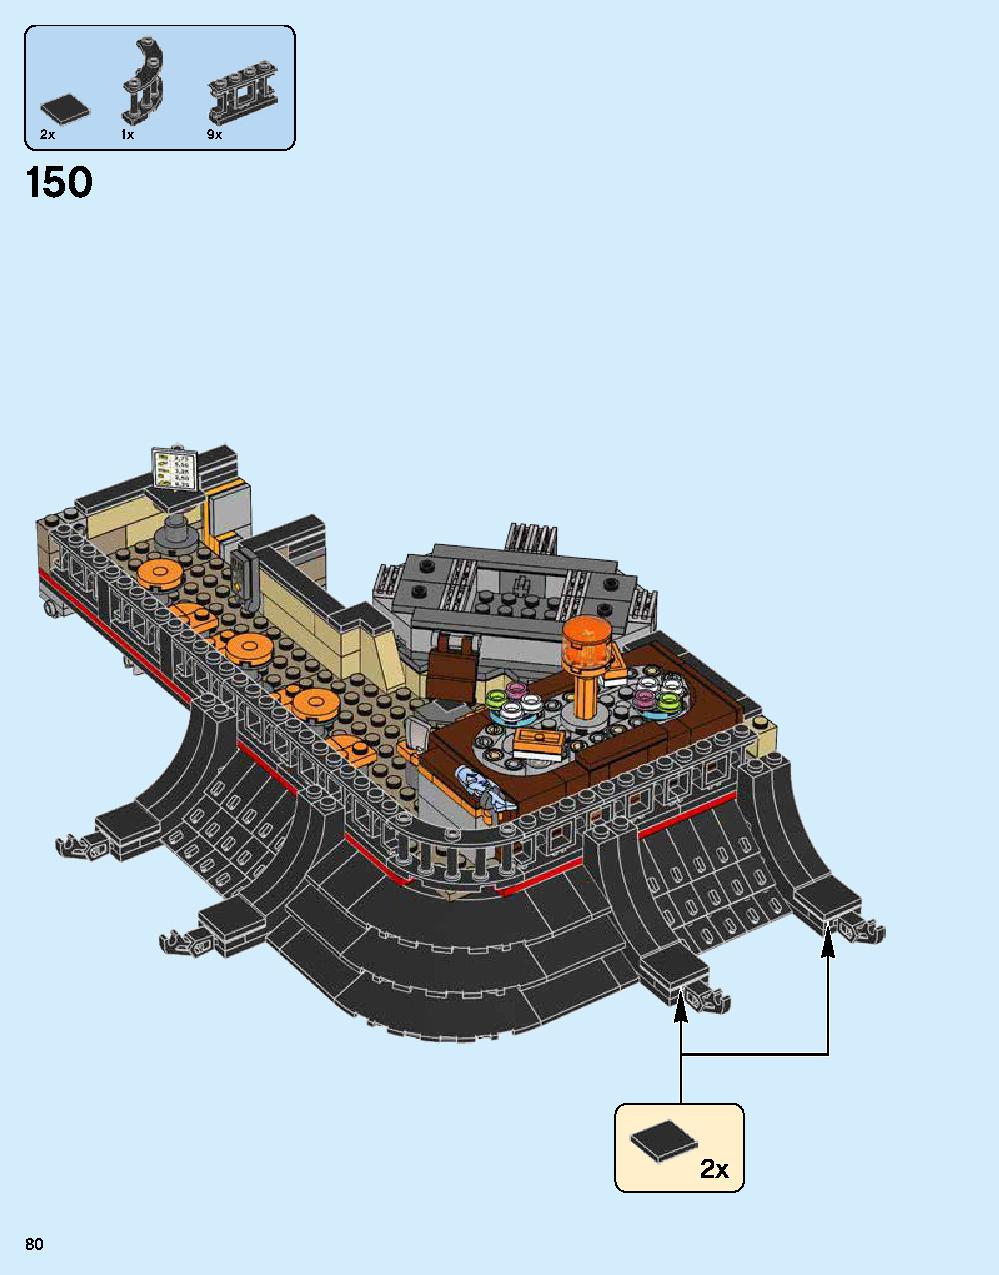 ニンジャゴー シティ 70620 レゴの商品情報 レゴの説明書・組立方法 80 page